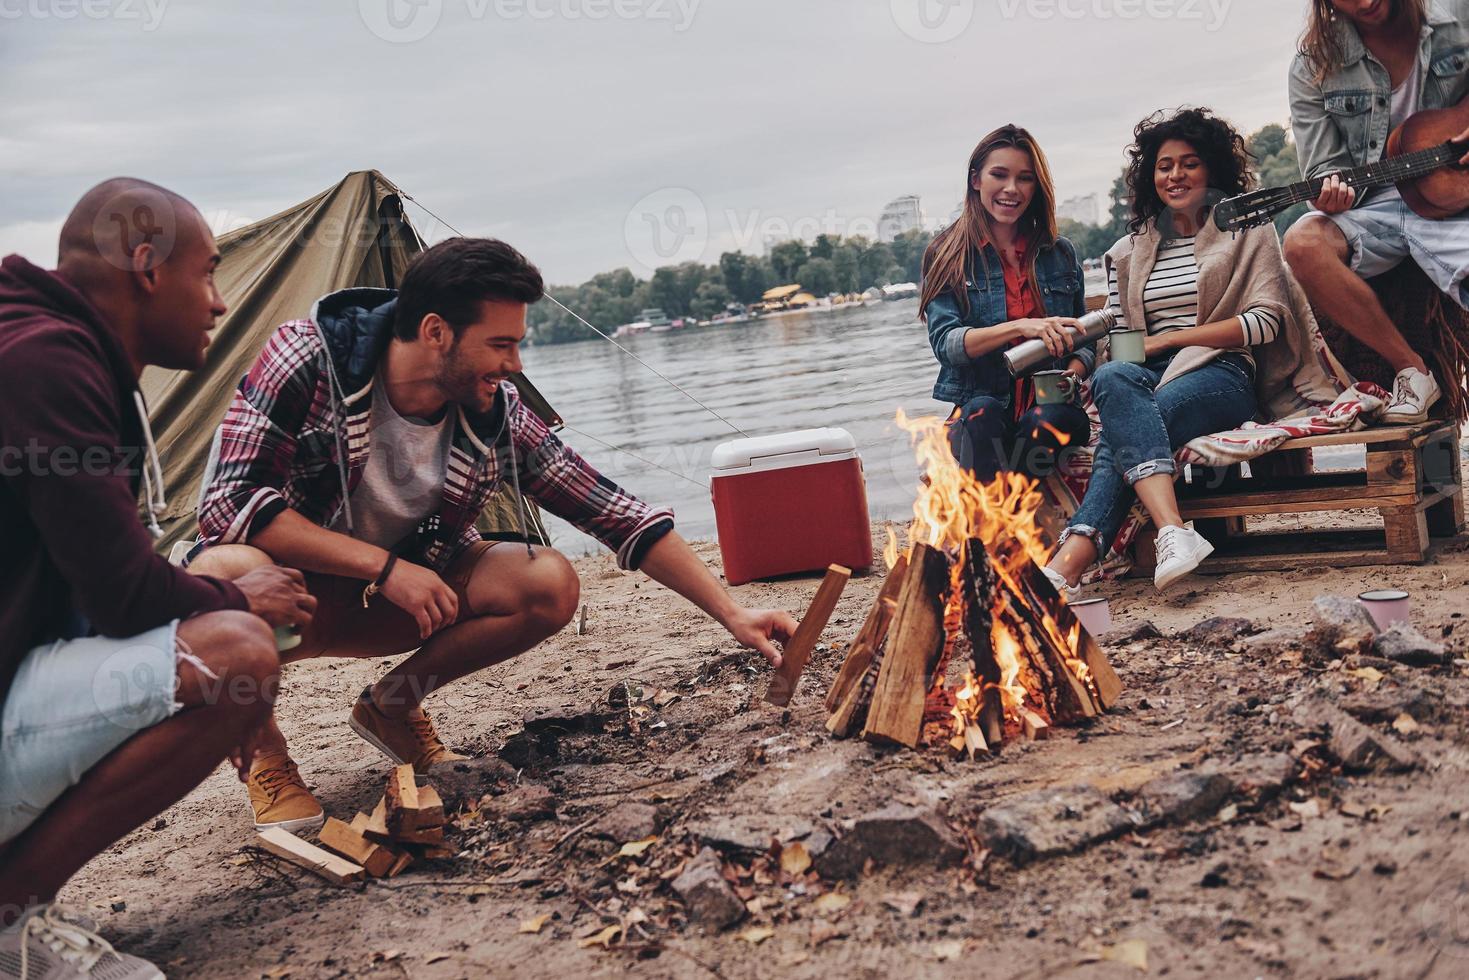 tempo despreocupado com os amigos. grupo de jovens em roupas casuais sorrindo enquanto desfruta de festa na praia perto da fogueira foto